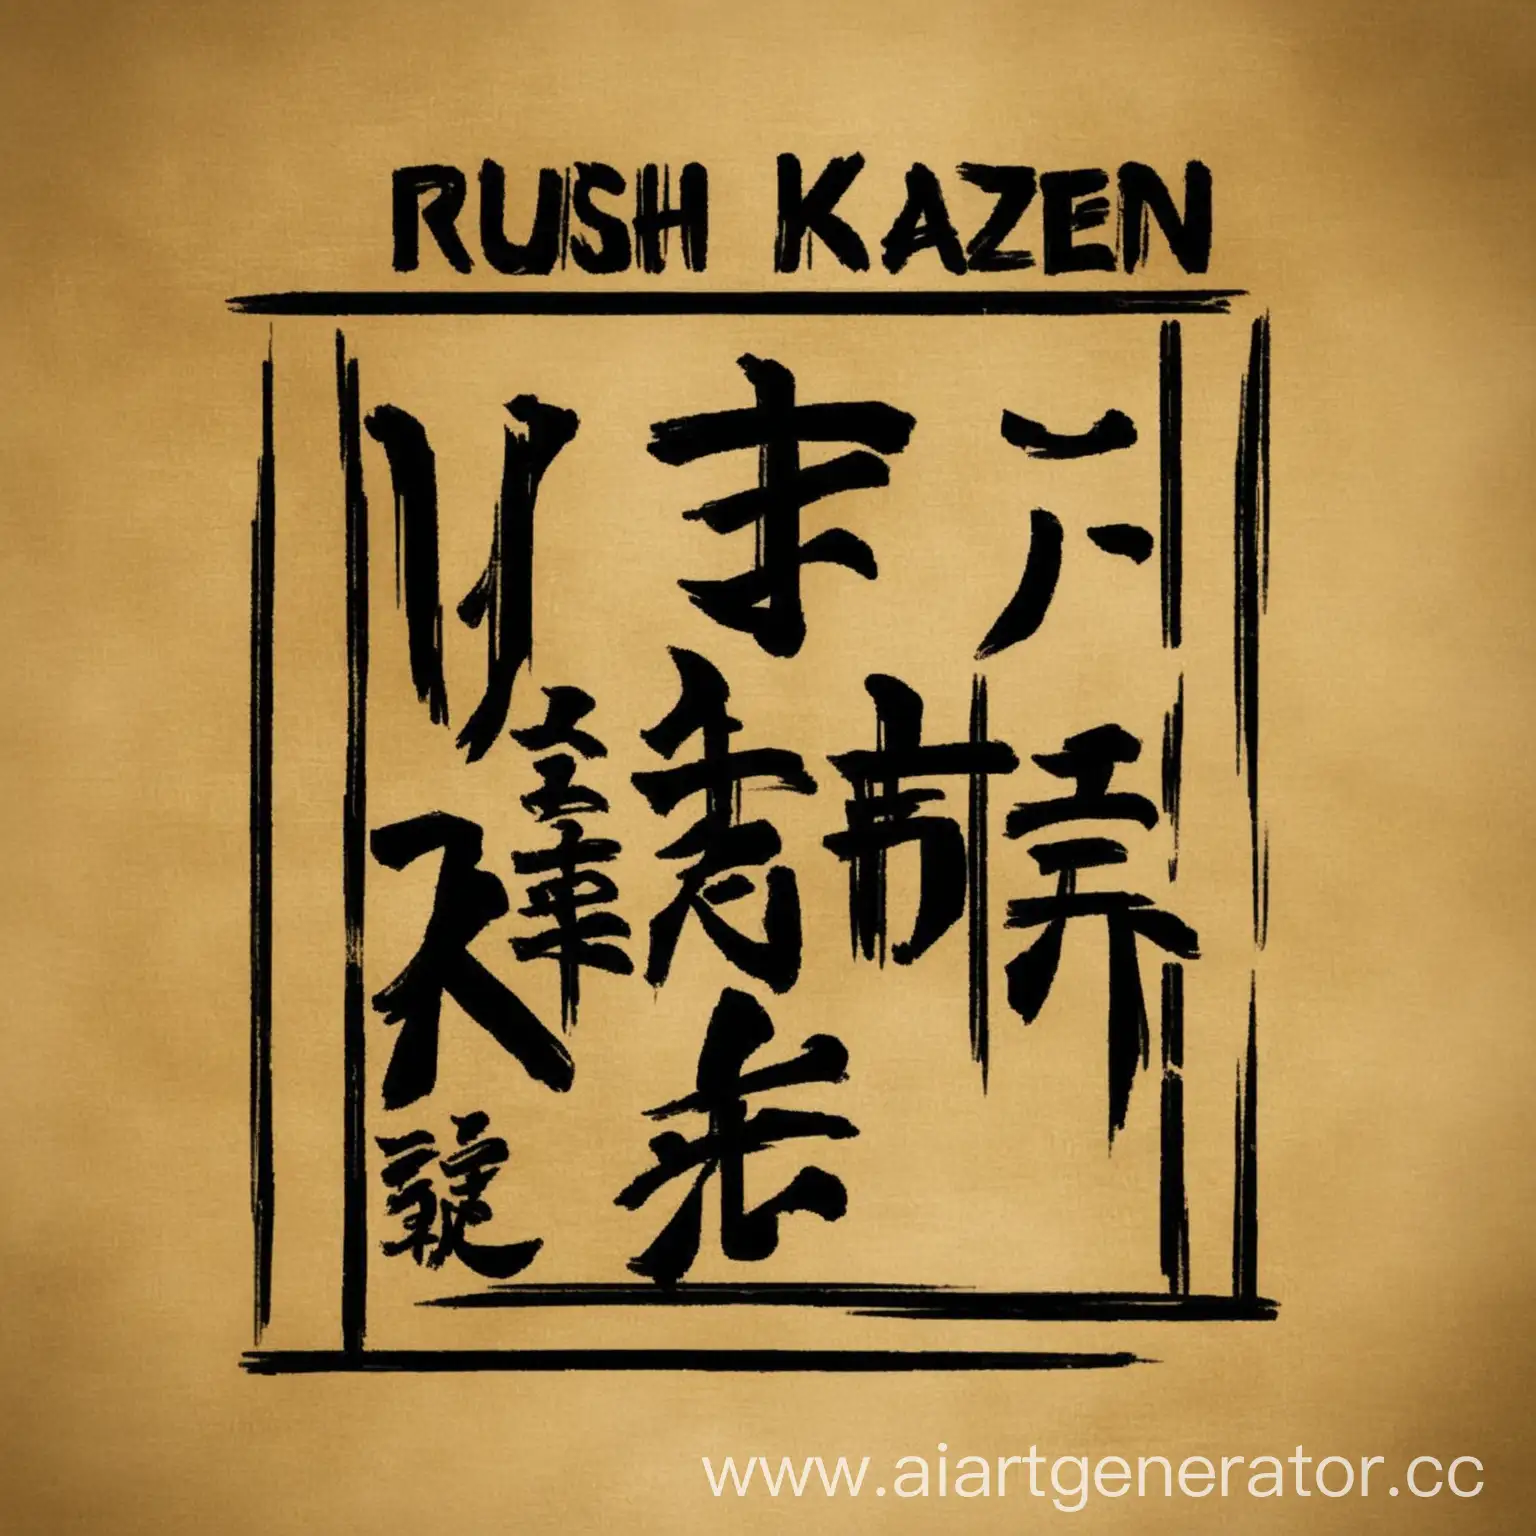 Rush Kaizen, Jujutsu Kaizen